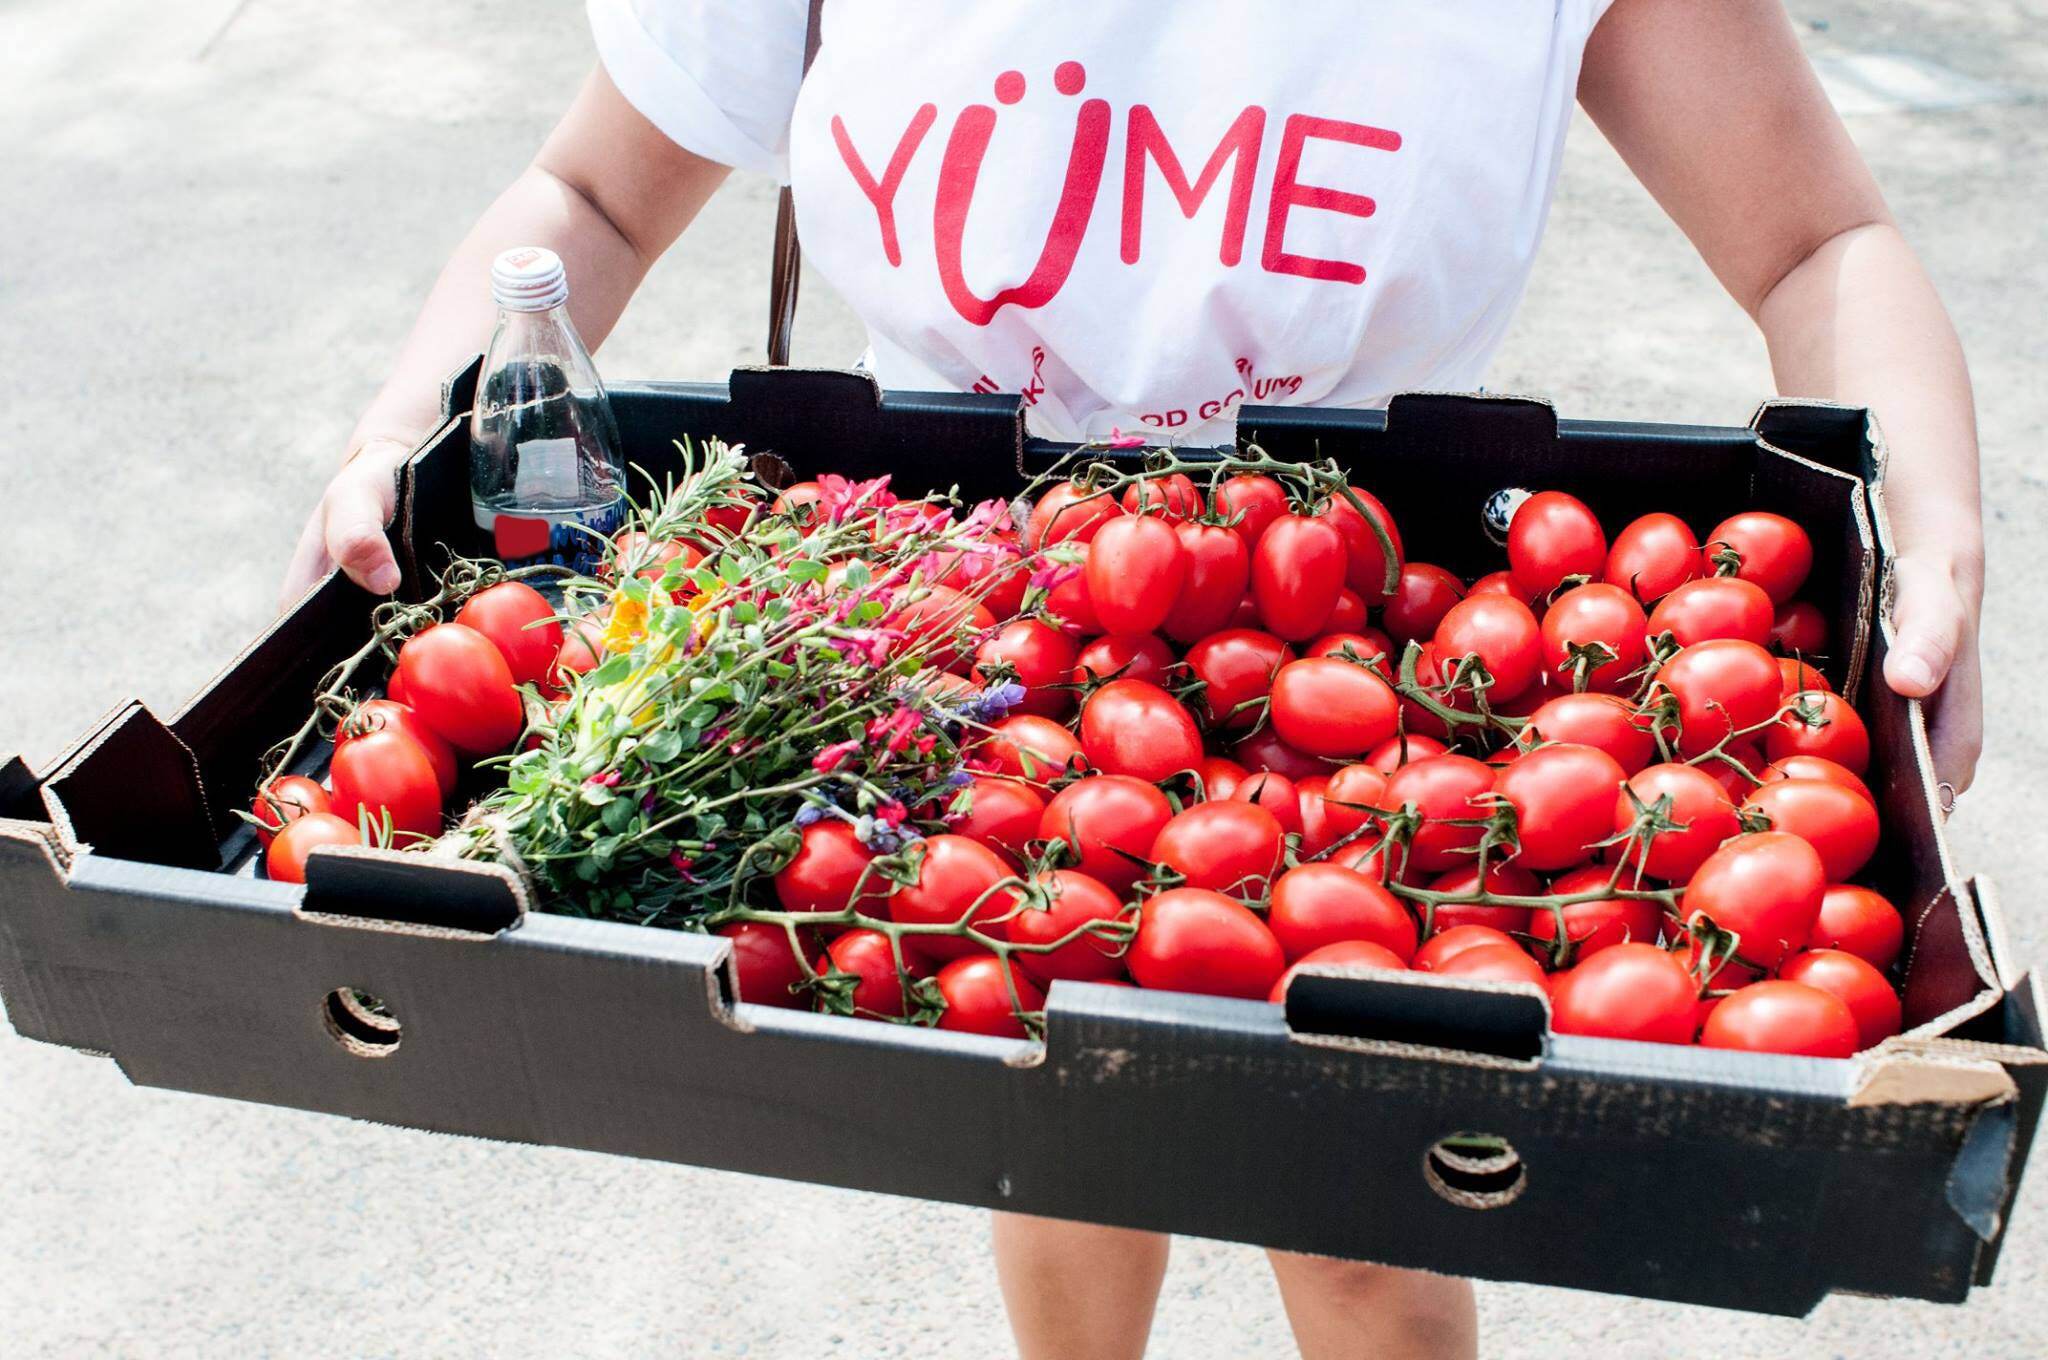 Yume’s Platform Revolutionizes Food Waste Management In Australia